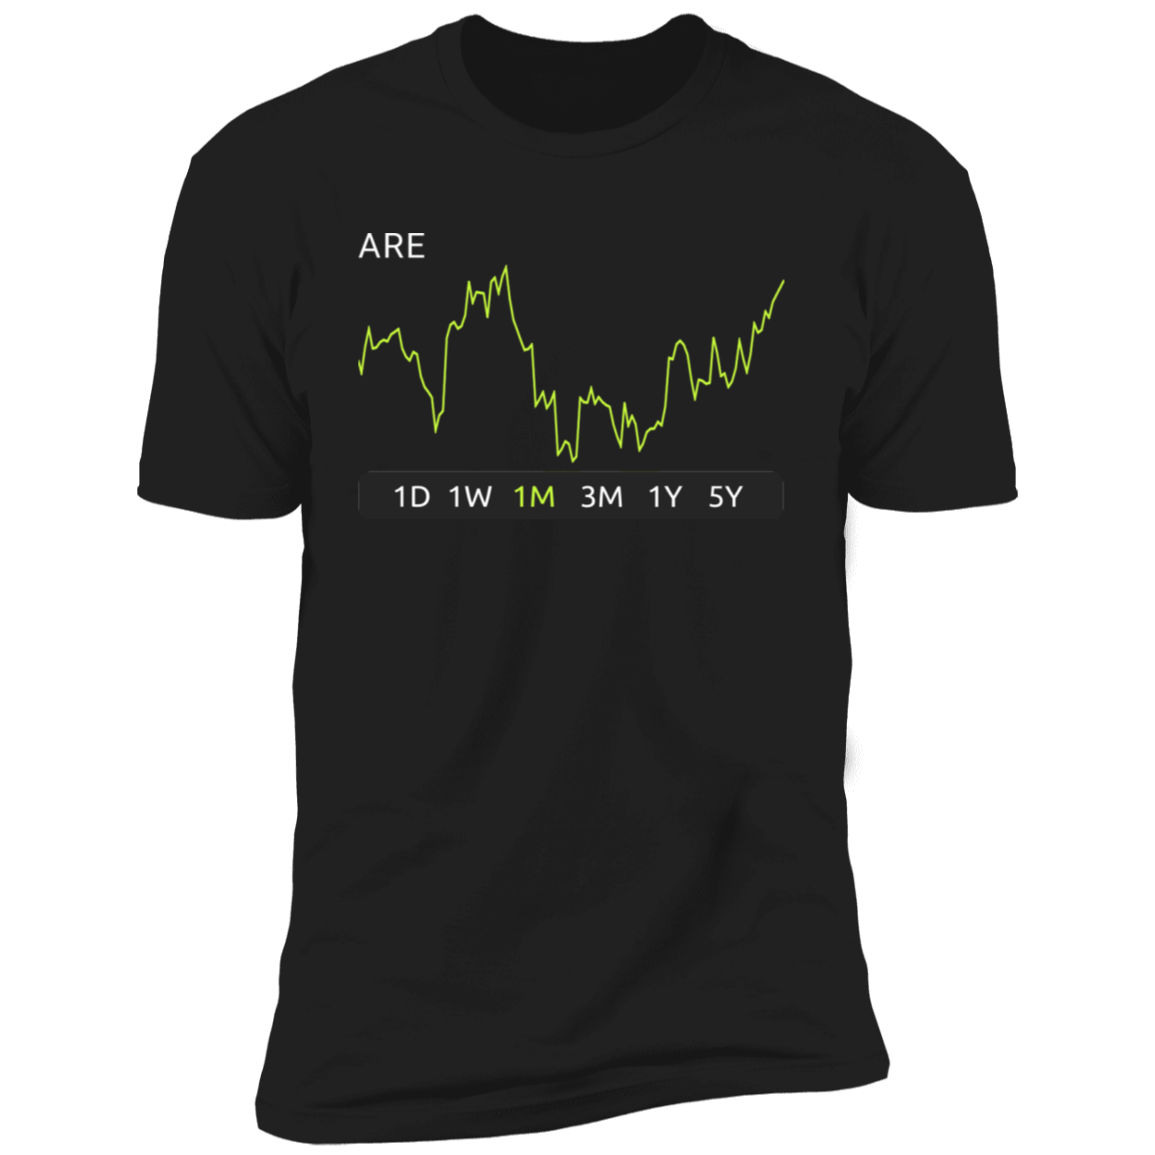 ARE Stock 1m Premium T-Shirt